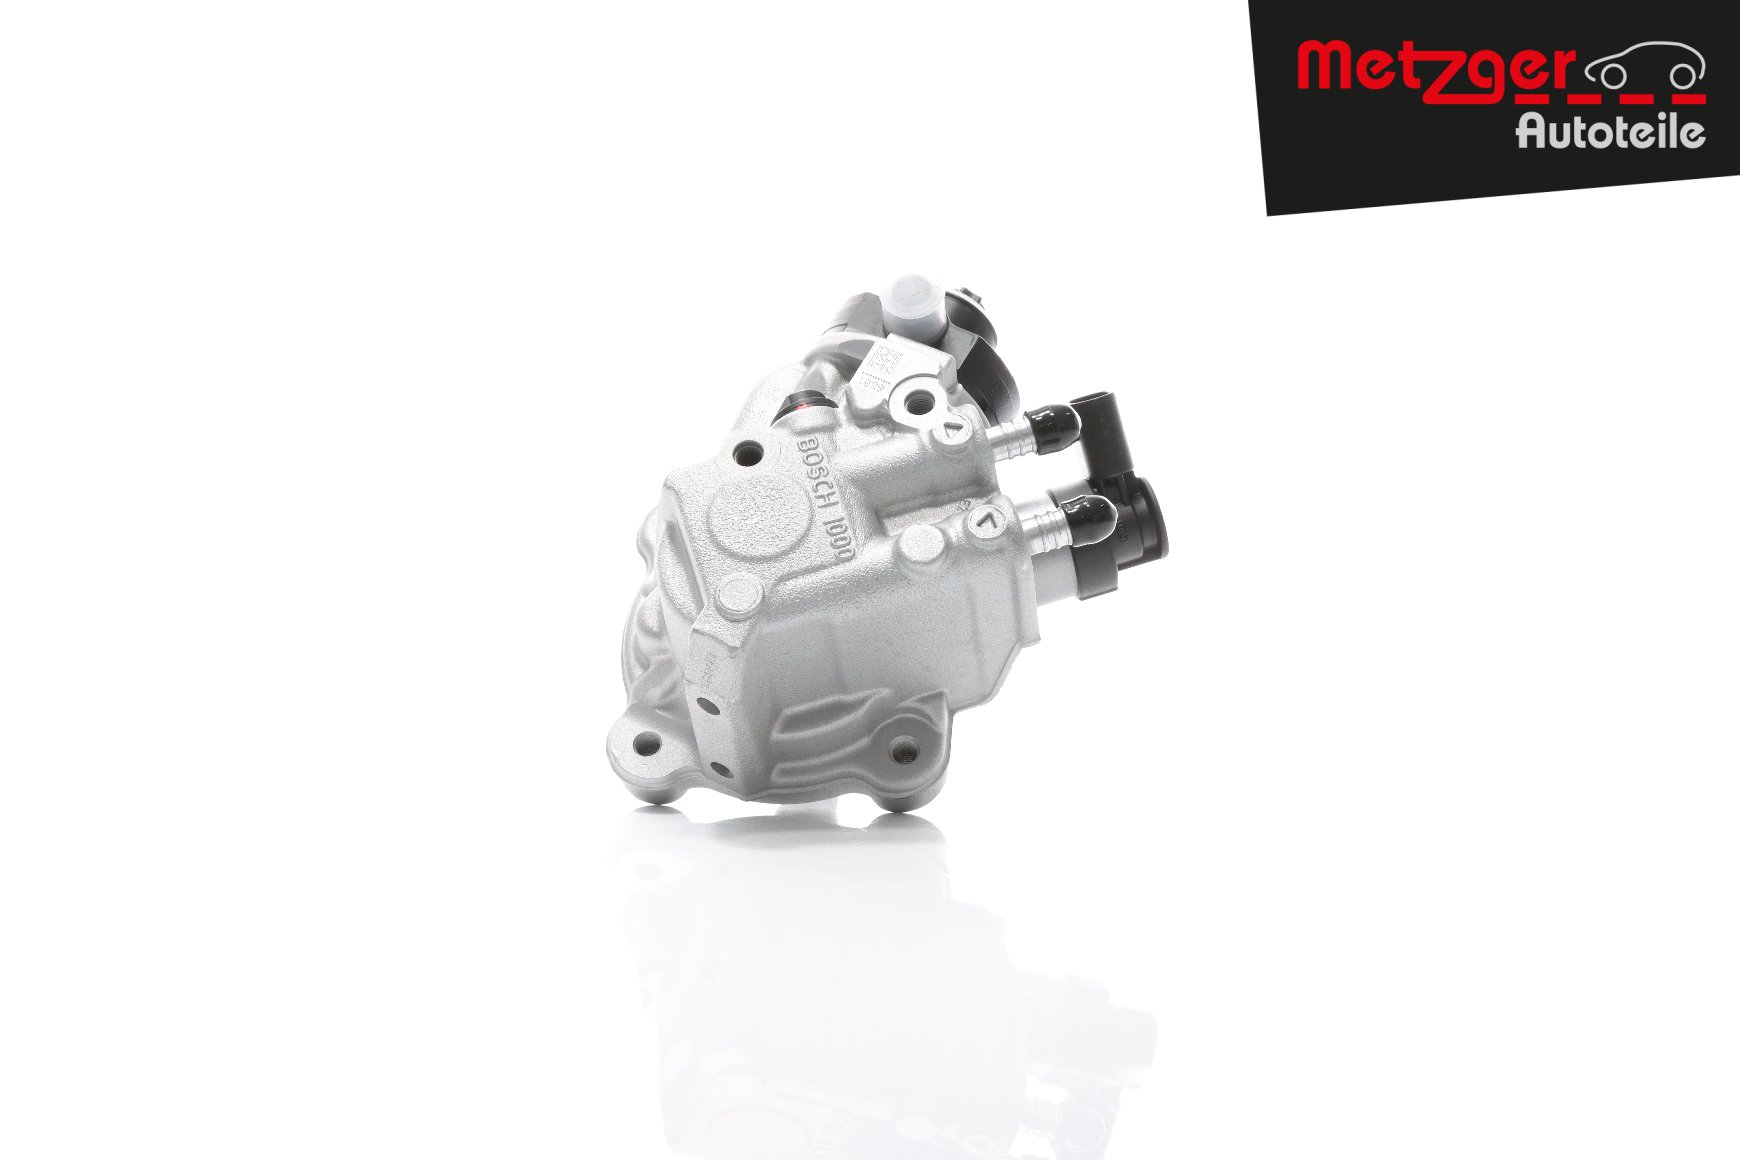 METZGER 0830086 High pressure fuel pump Tiguan Mk1 2.0 TDI 4motion 170 hp Diesel 2014 price